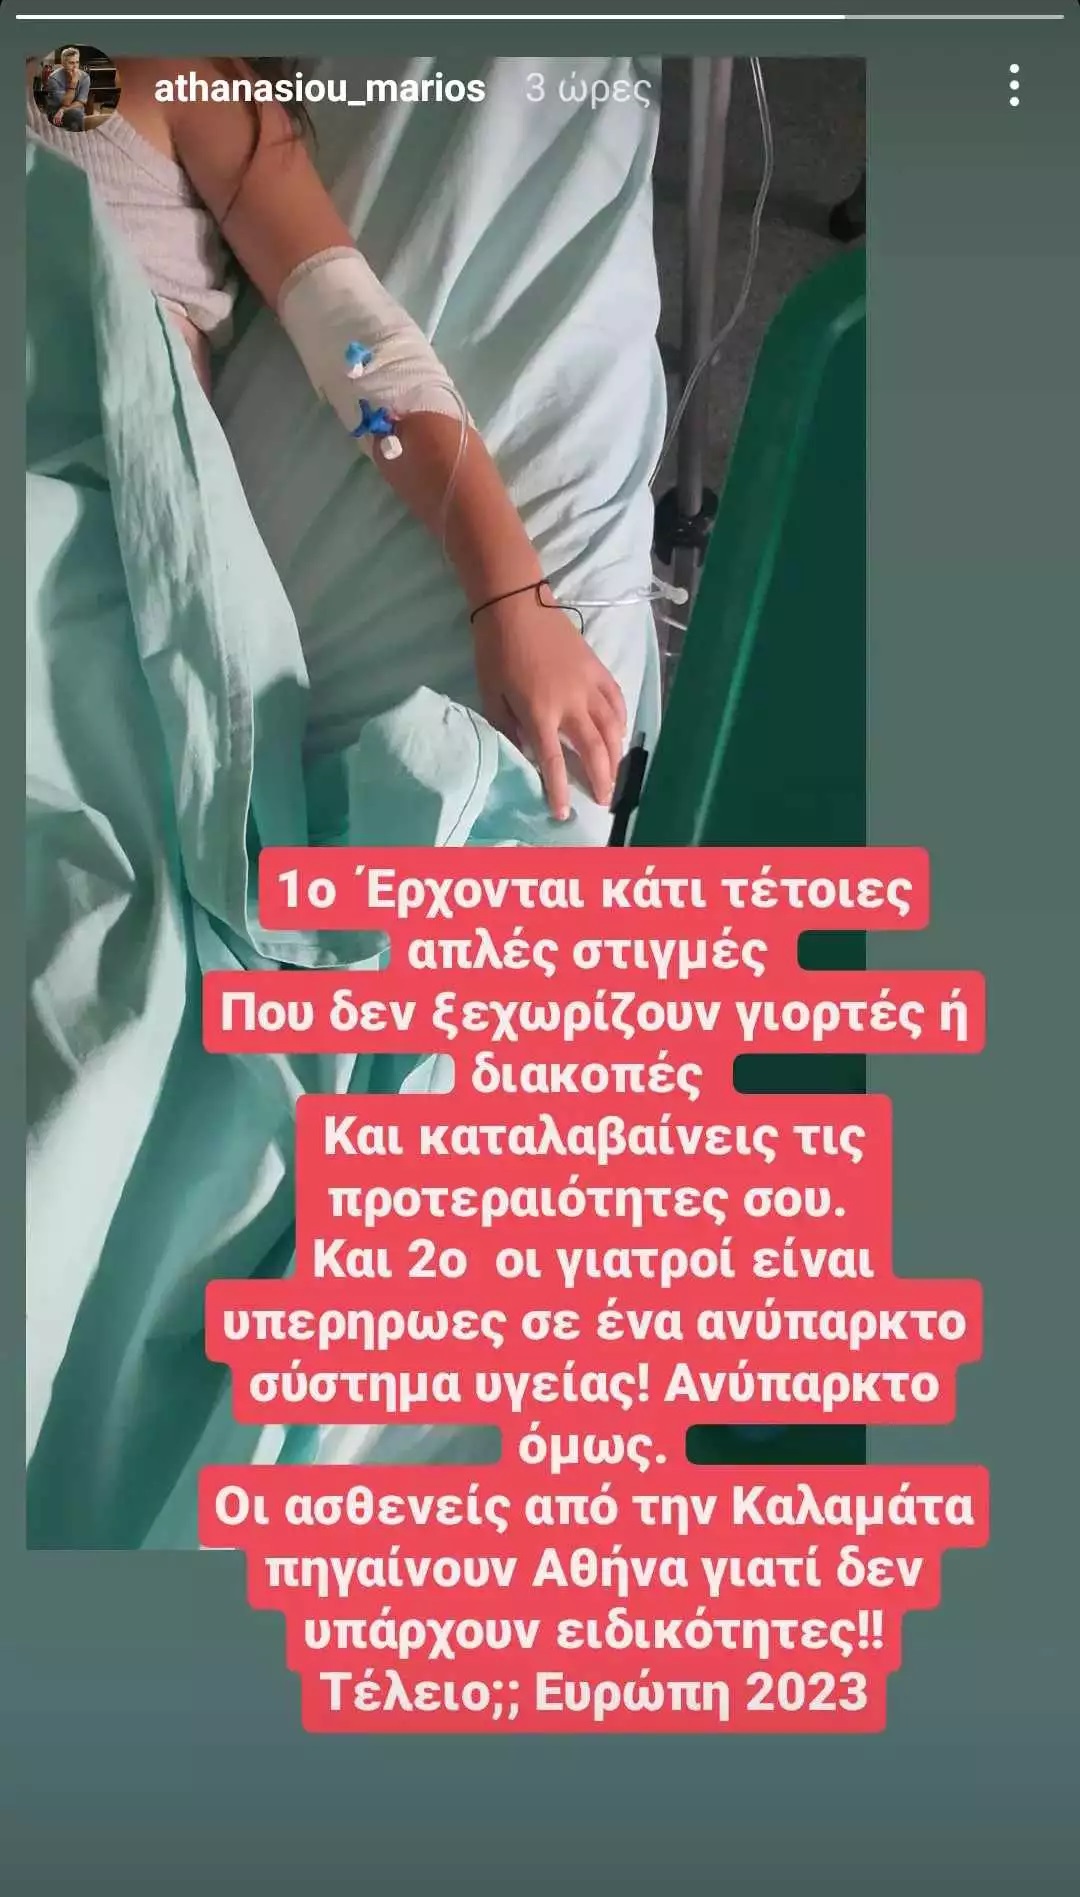 Στο νοσοκομείο η κόρη του Μάριου Αθανασίου – Χρειάσθηκε να μεταφερθεί από την Καλαμάτα στην Αθήνα  (εικόνα)